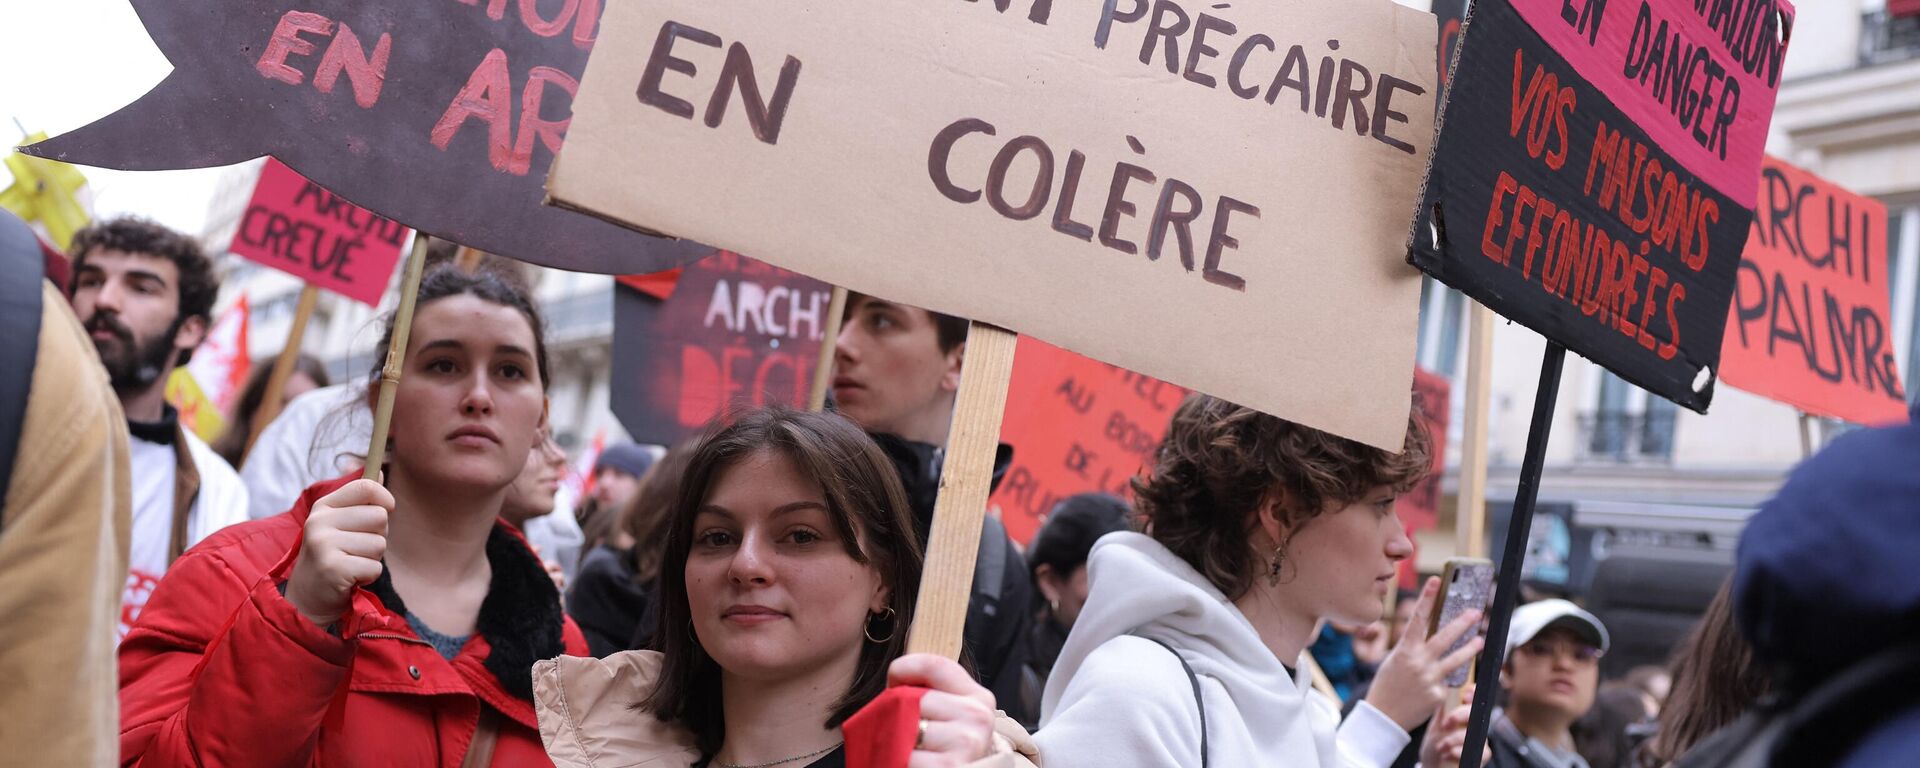 Thanh niên tuần hành phản đối cải cách lương hưu ở Paris, ngày 9 tháng 3 năm 2023 - Sputnik Việt Nam, 1920, 09.03.2023